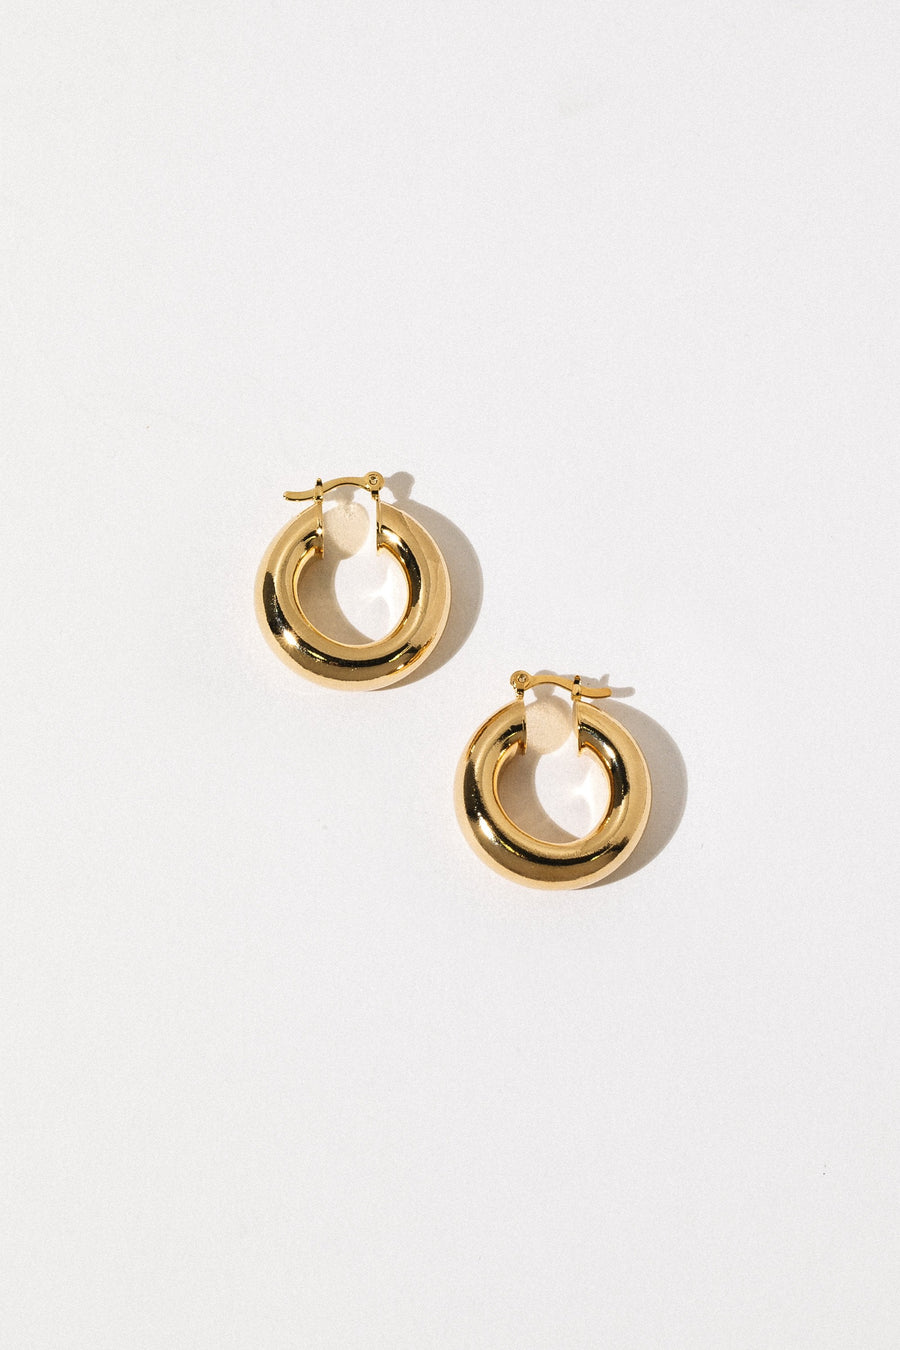 Dona Italia Jewelry Gold / SMALL Small Aubree Tube Hoops